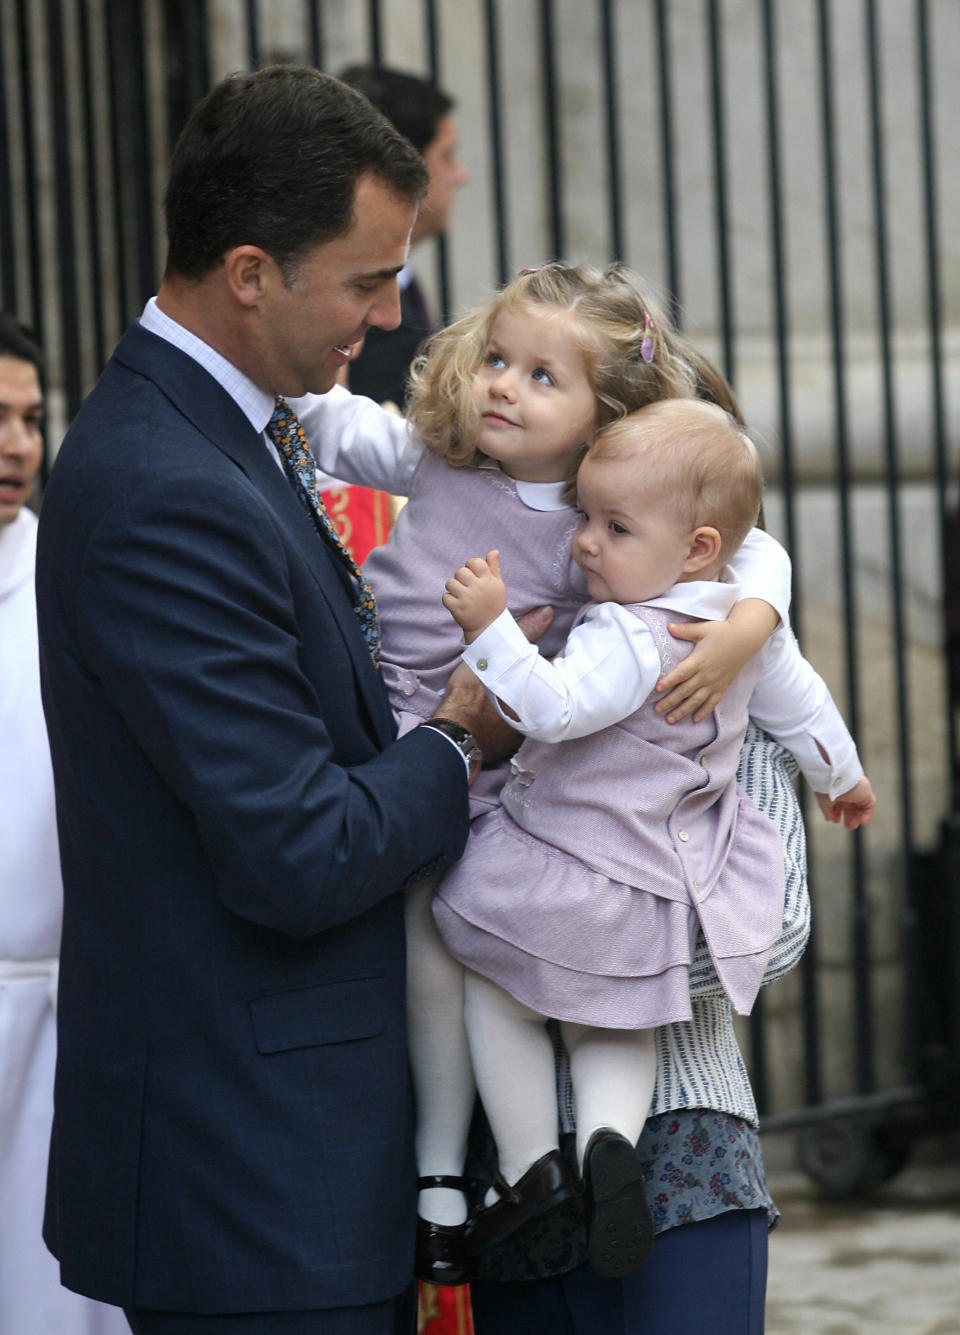 <p>Felipe VI tenía en brazos a Leonor y la reina Letizia sostenía a Sofía pero, incluso estando separadas, la heredera quería abrazar a su hermana pequeña. (Foto: Jaime Reina / AFP / Getty Images)</p> 